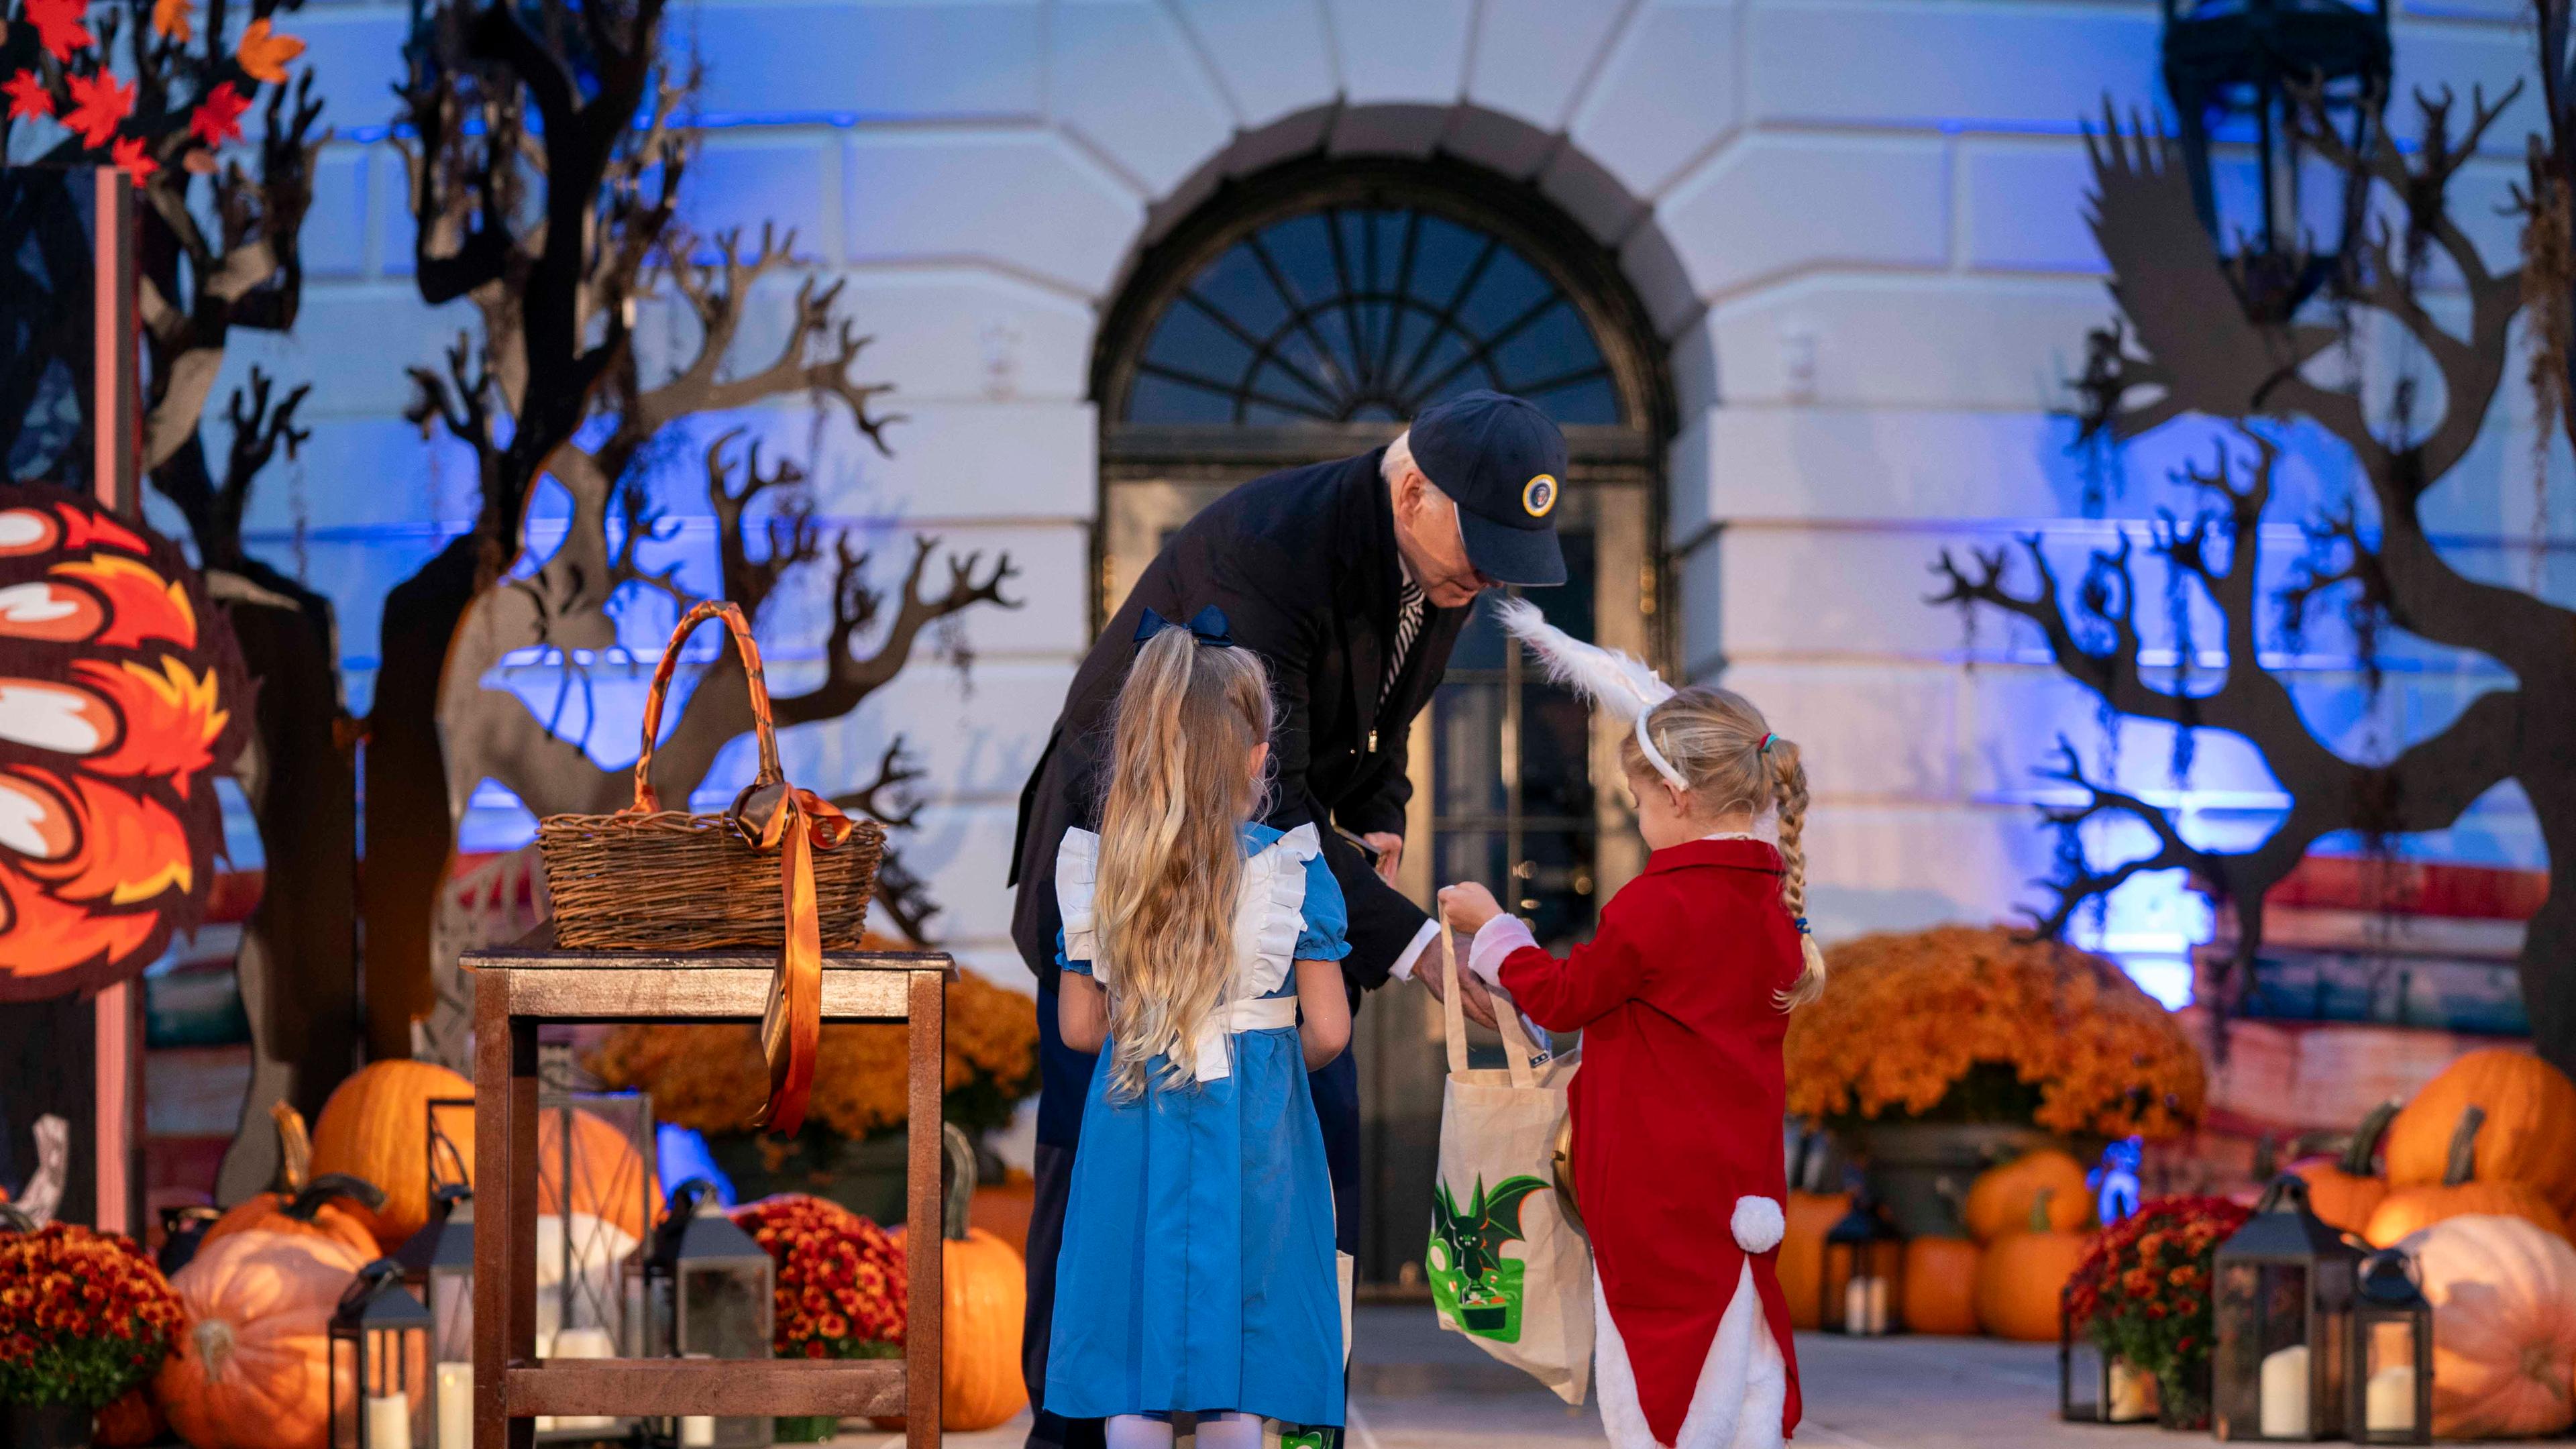 Joe Biden gibt zwei kleinen Mädchen in Kostümen Süßigkeiten.